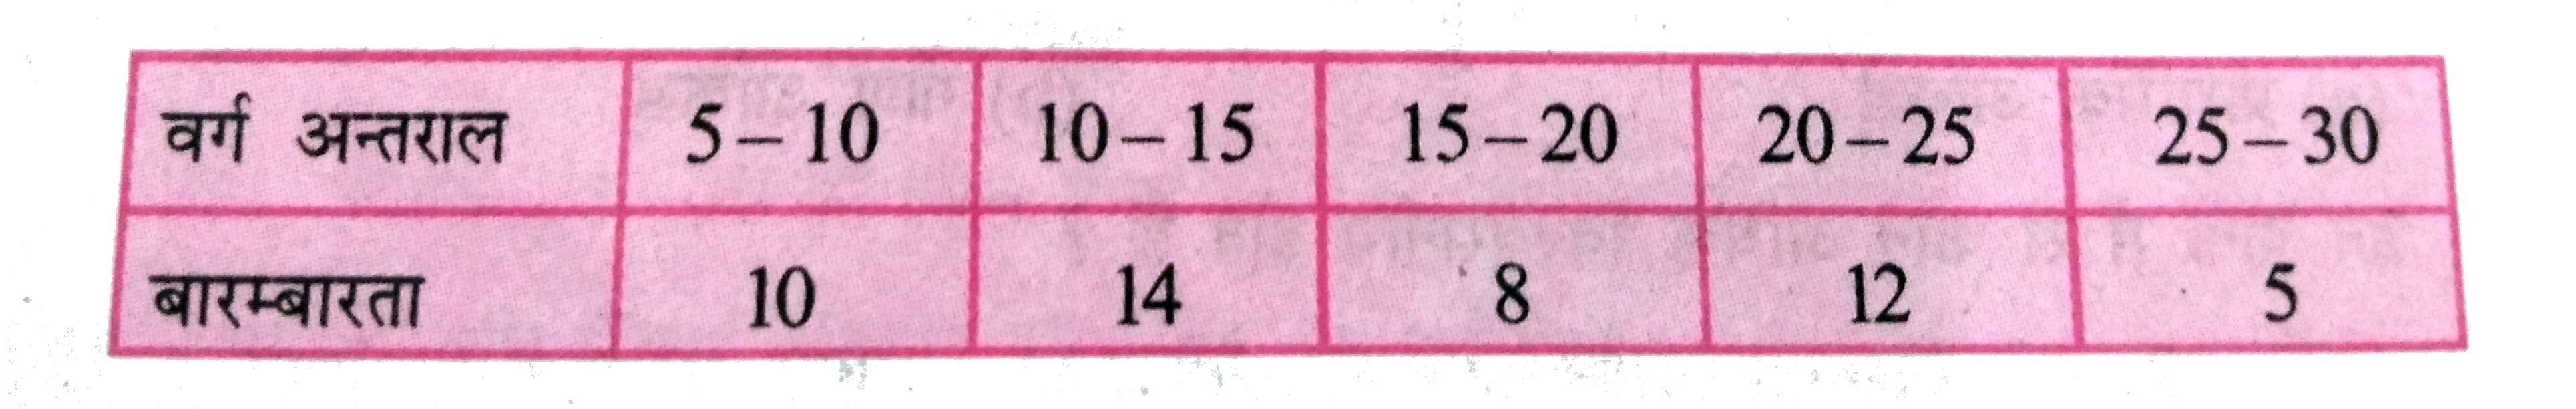 निम्नलिखित सारणी से प्रश्नों के उत्तर दें-       (i)  15-20 की संचयी बारम्बारता क्या है?   (ii)  संचयी बारम्बारता 49 वाला वर्ग क्या है ?